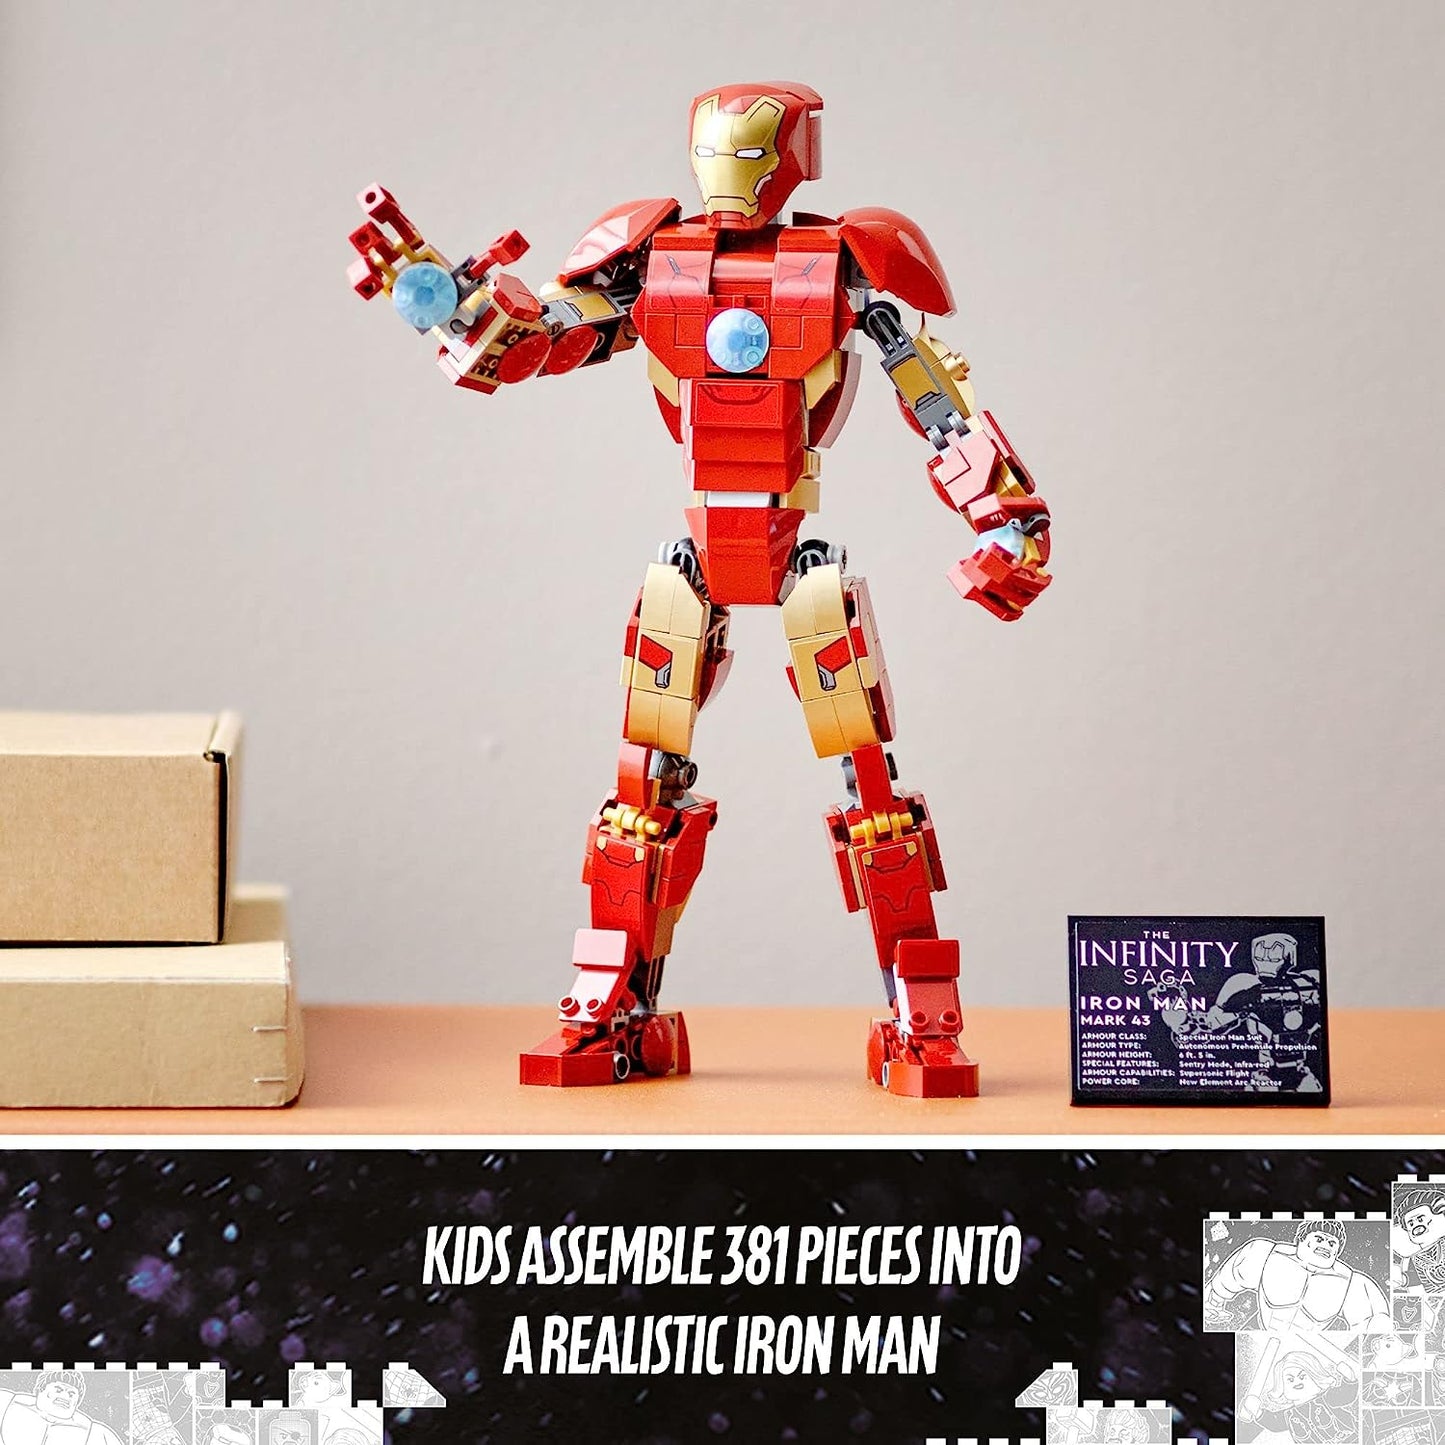 LEGO Marvel Super Heroes Figura de Iron Man 76206 381 pcs